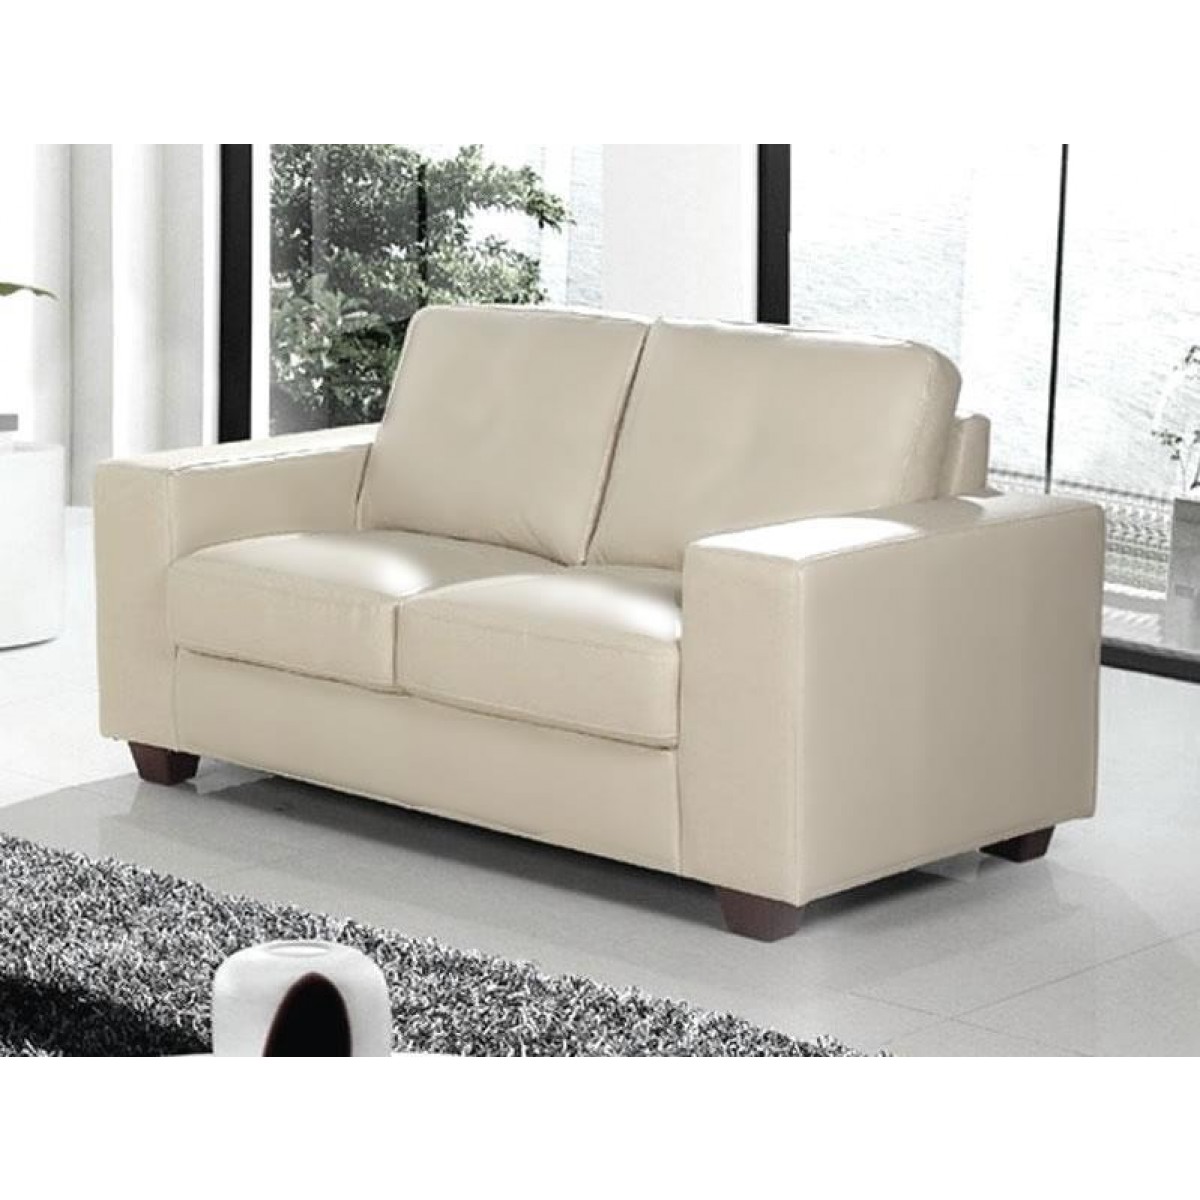 Cream Leather 3 Seater Sofa, Modern Cream Leather Sofa